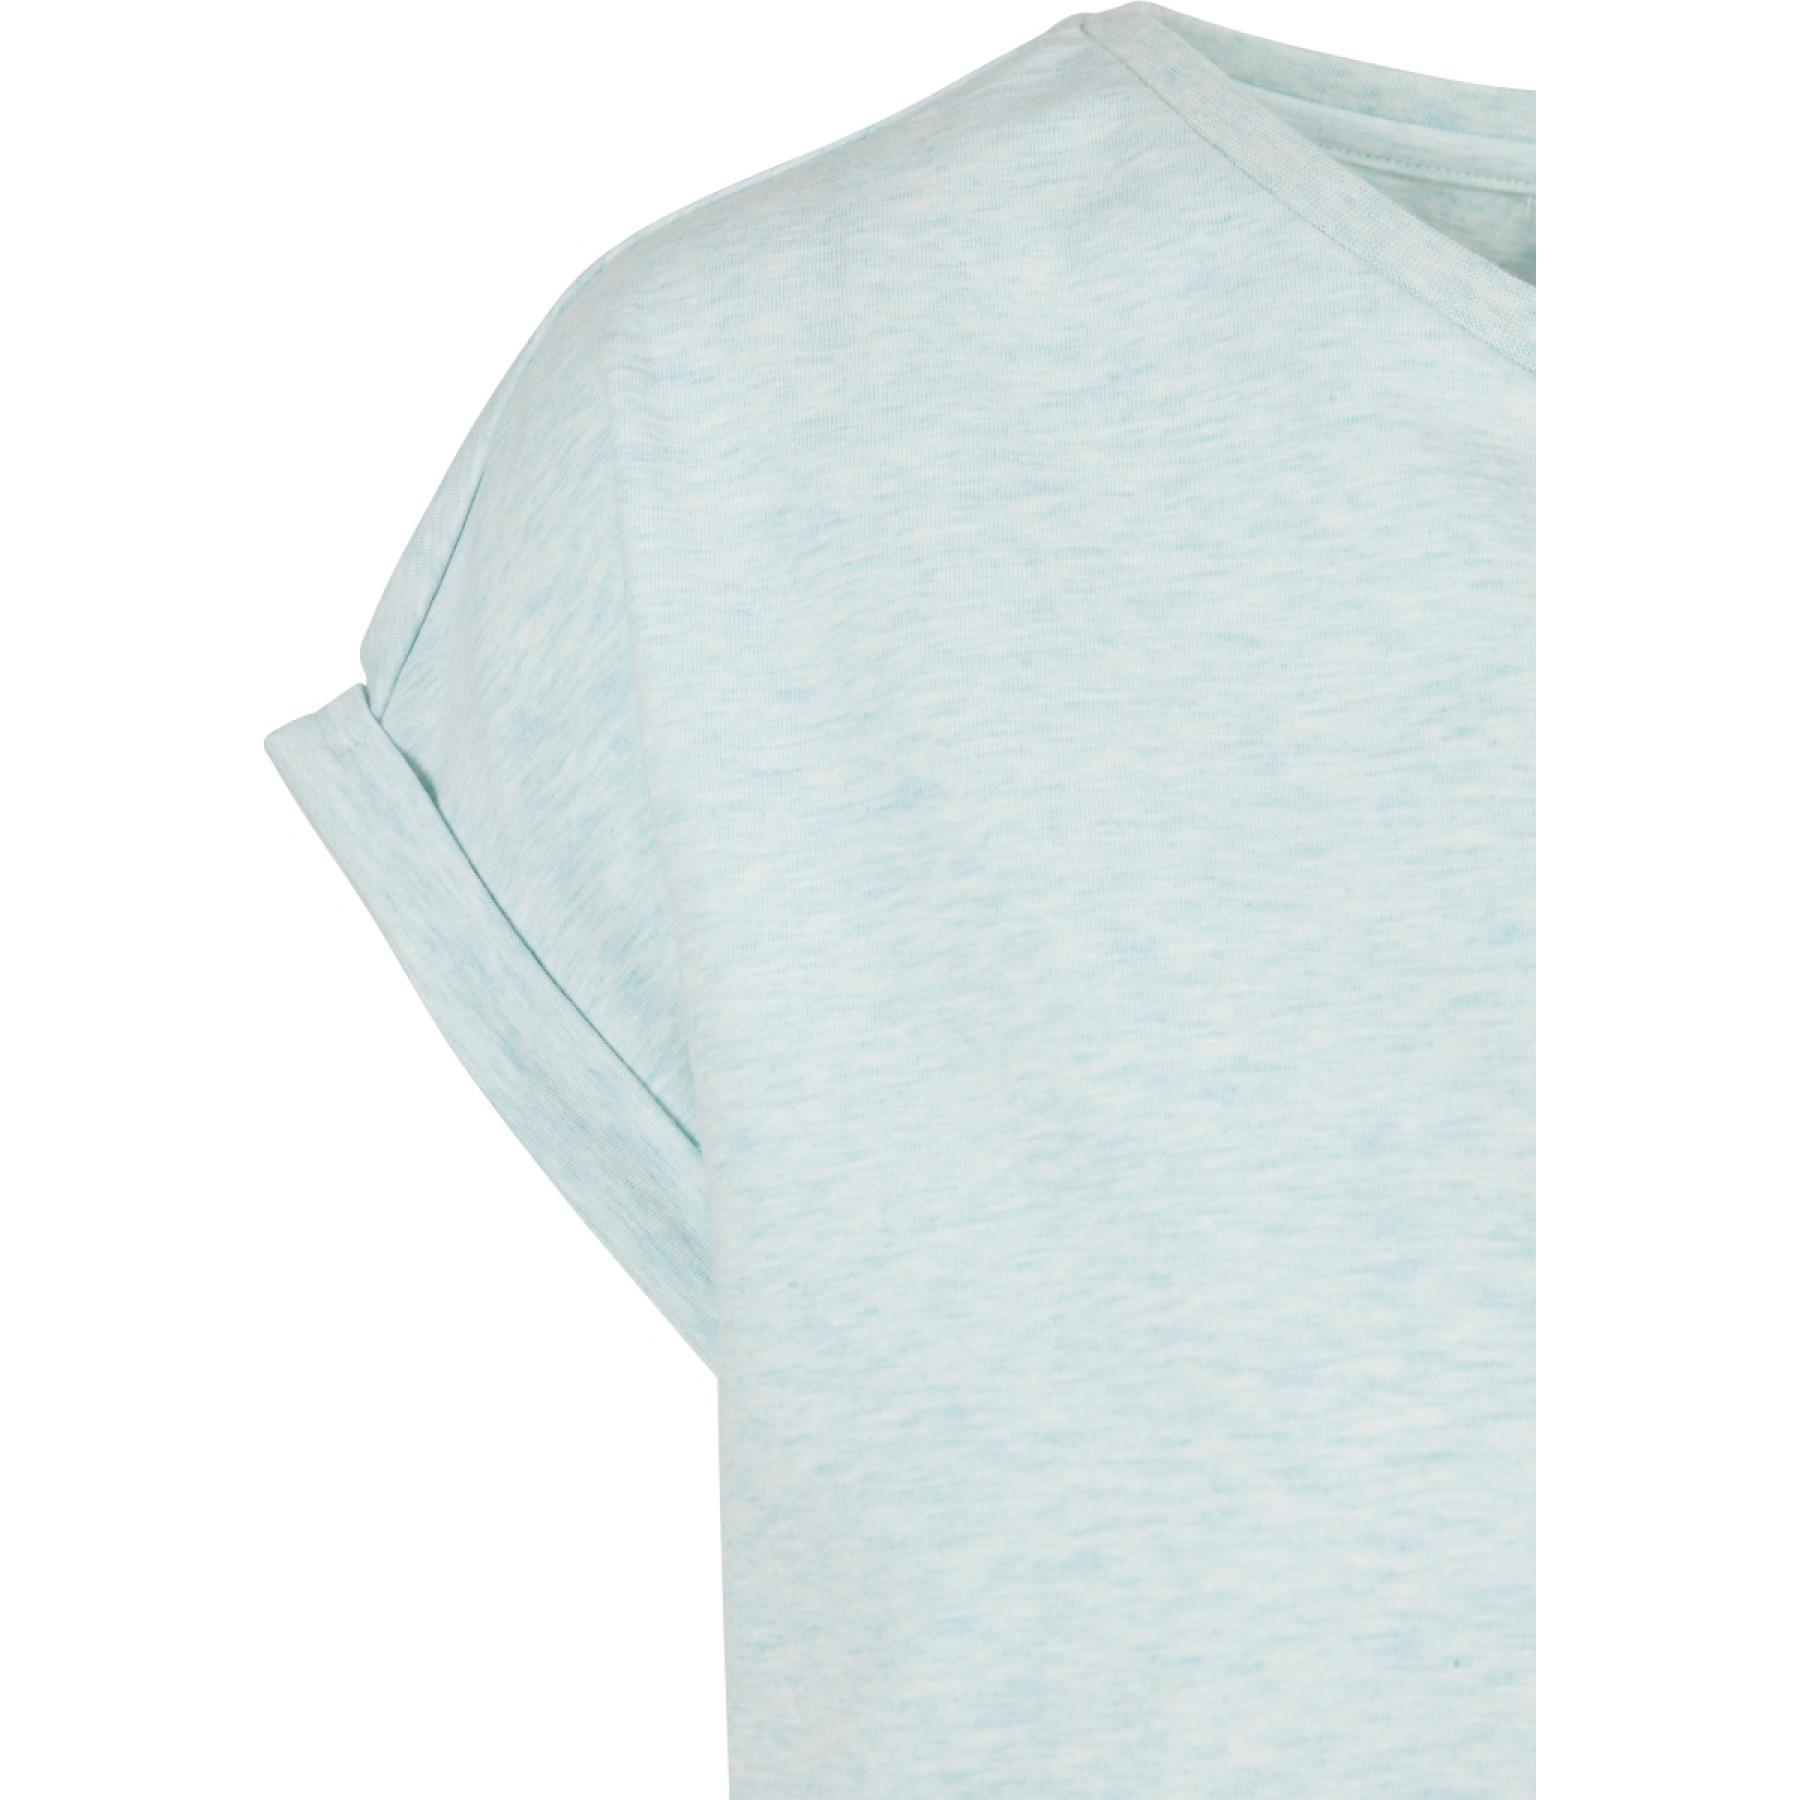 T-shirt mulher Urban Classics color melange extended shoulder